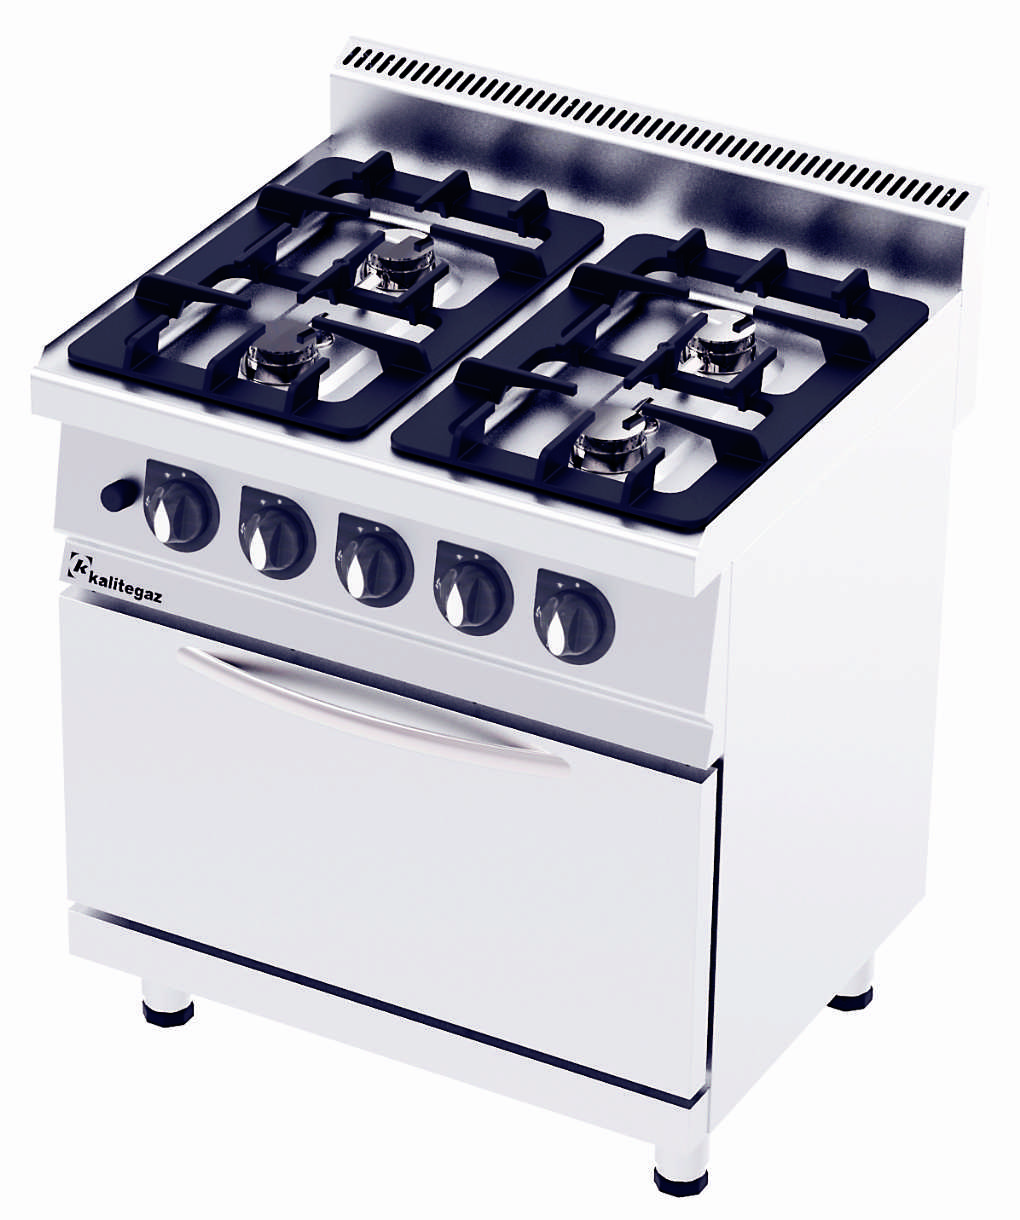 CO8070GE 700 Serıe Gas & Electrıcal Cooker wıth Oven